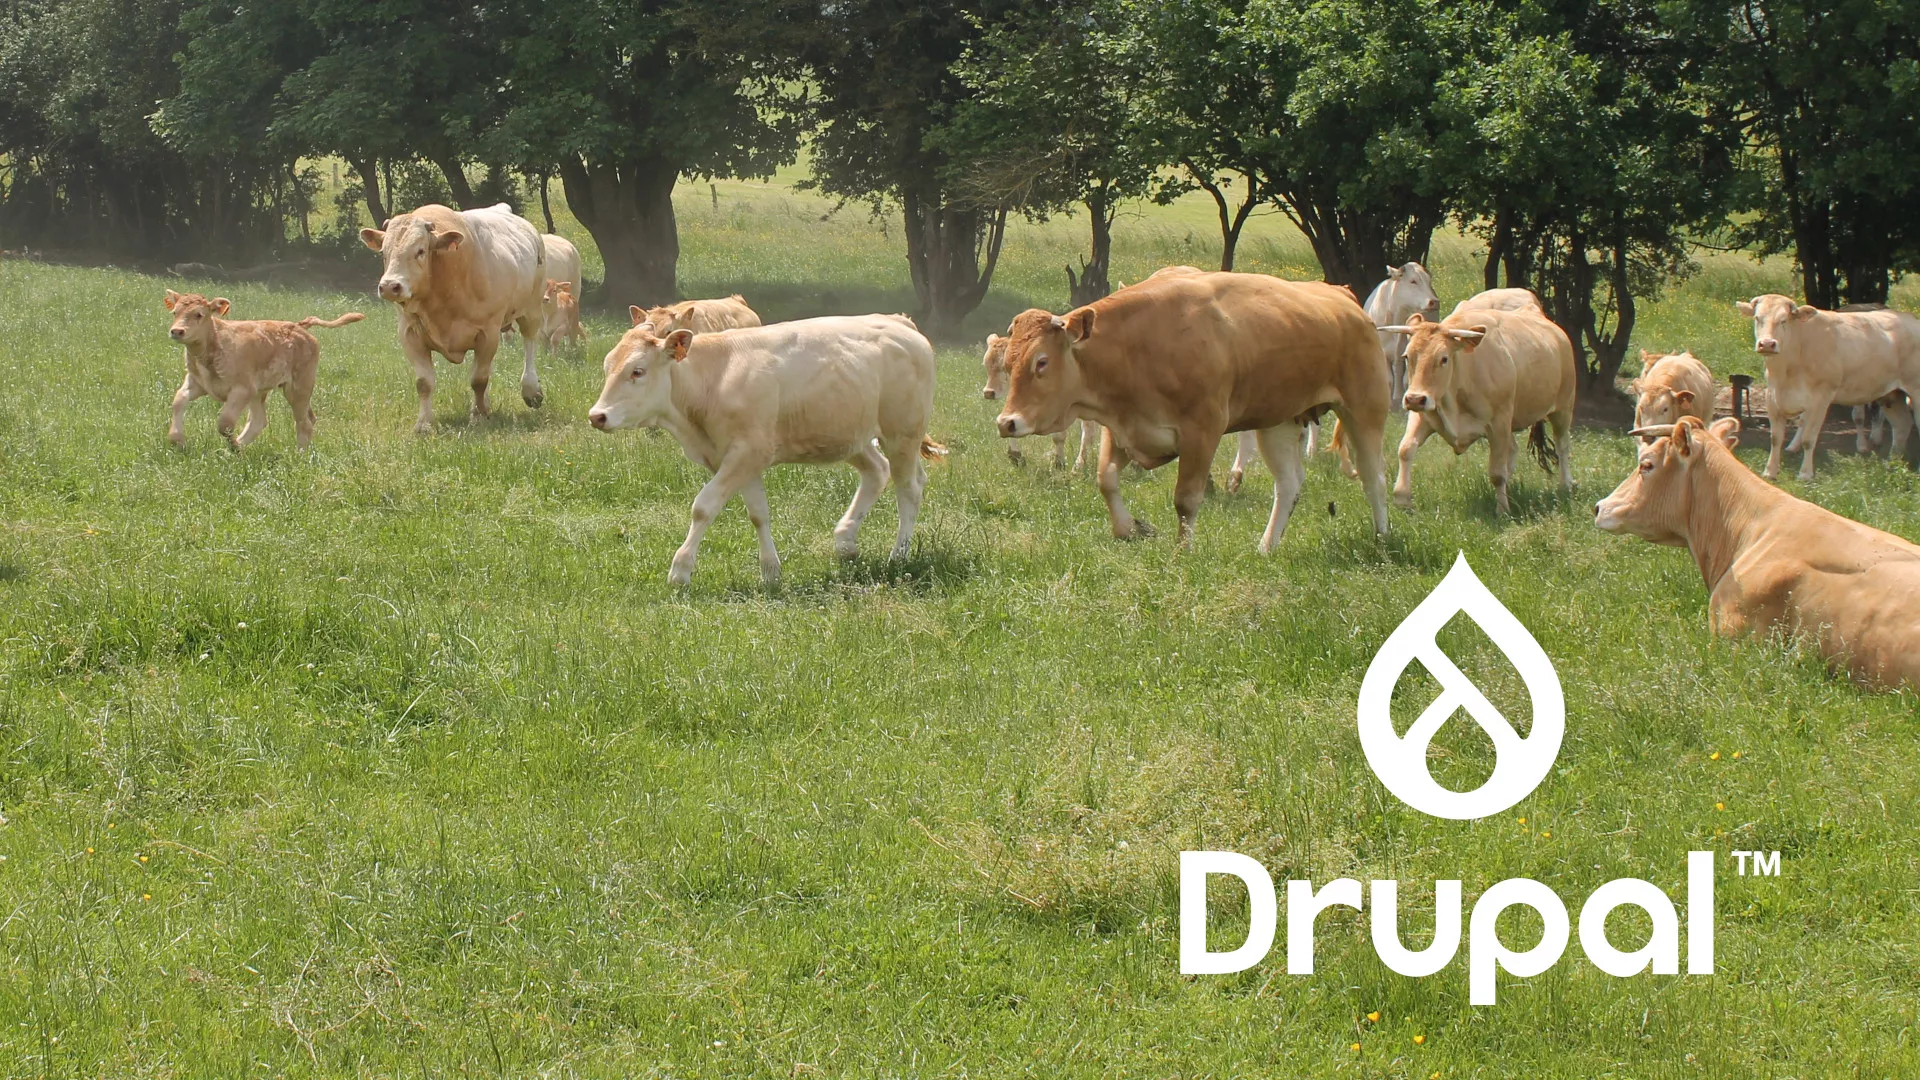 Drupal est un logiciel libre et gratuit créé par Dries Buytaert